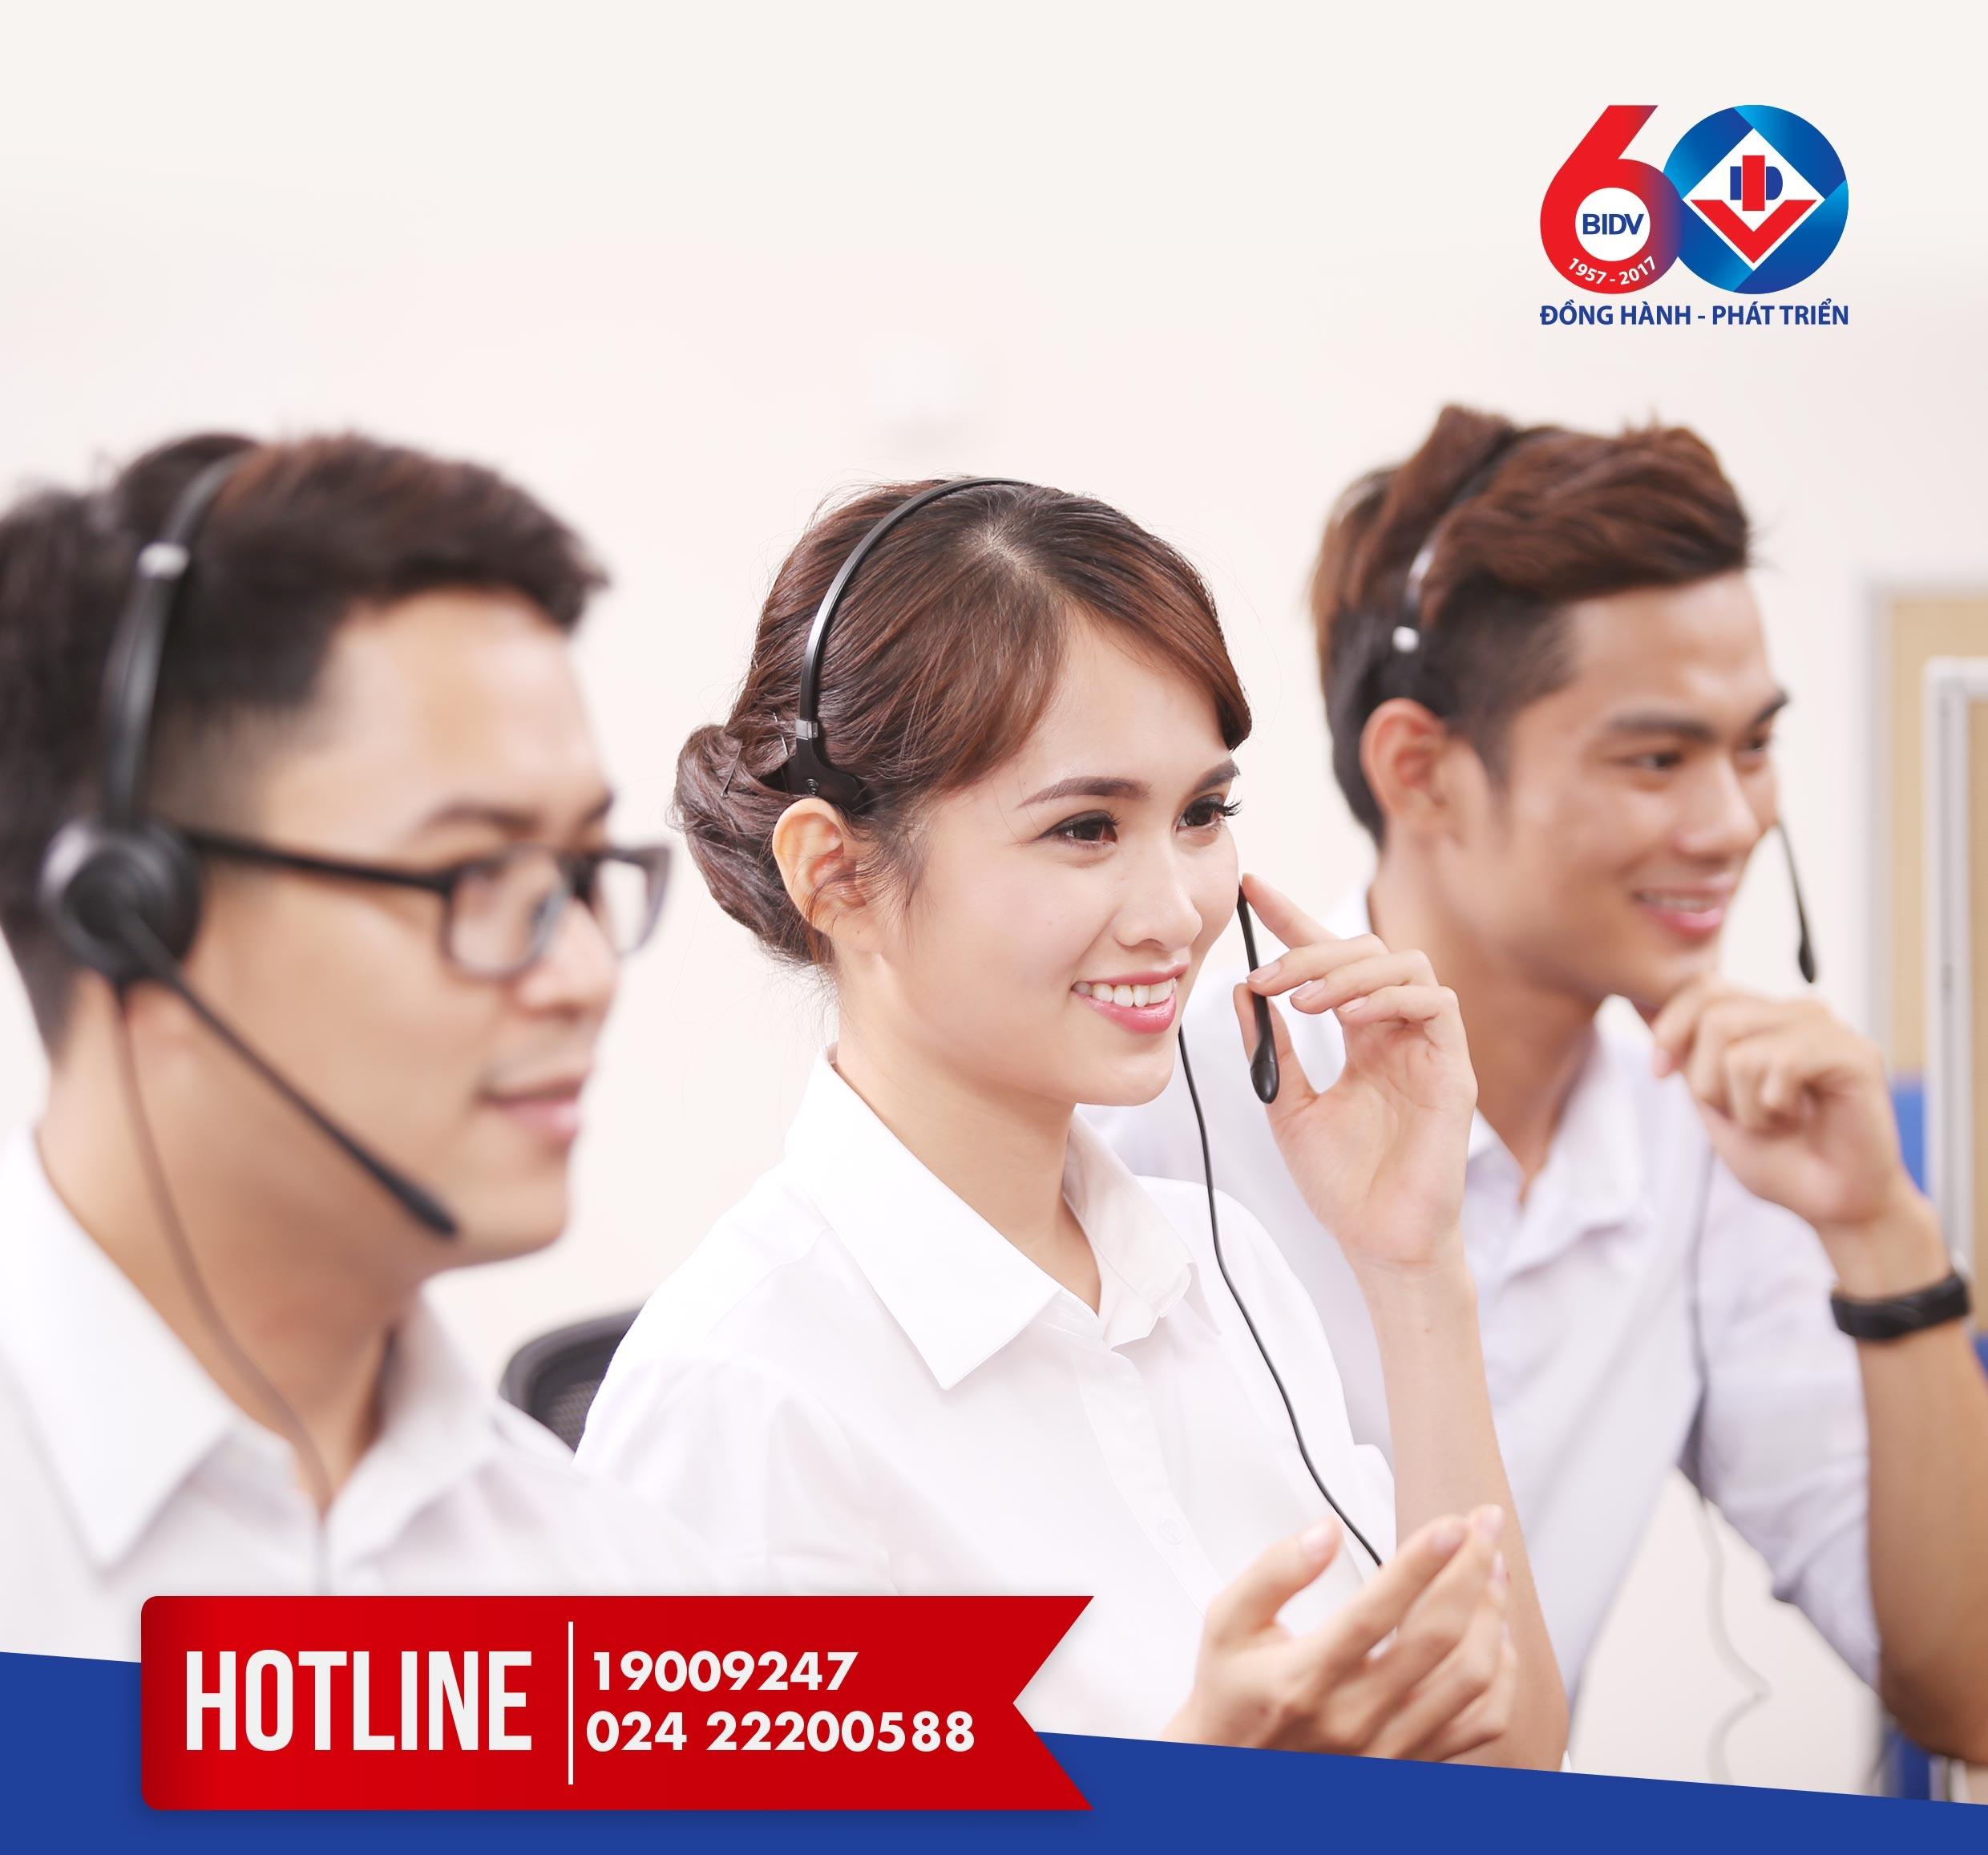 Tổng đài BIDV- Hotline chăm sóc khách hàng miễn phí 24/7